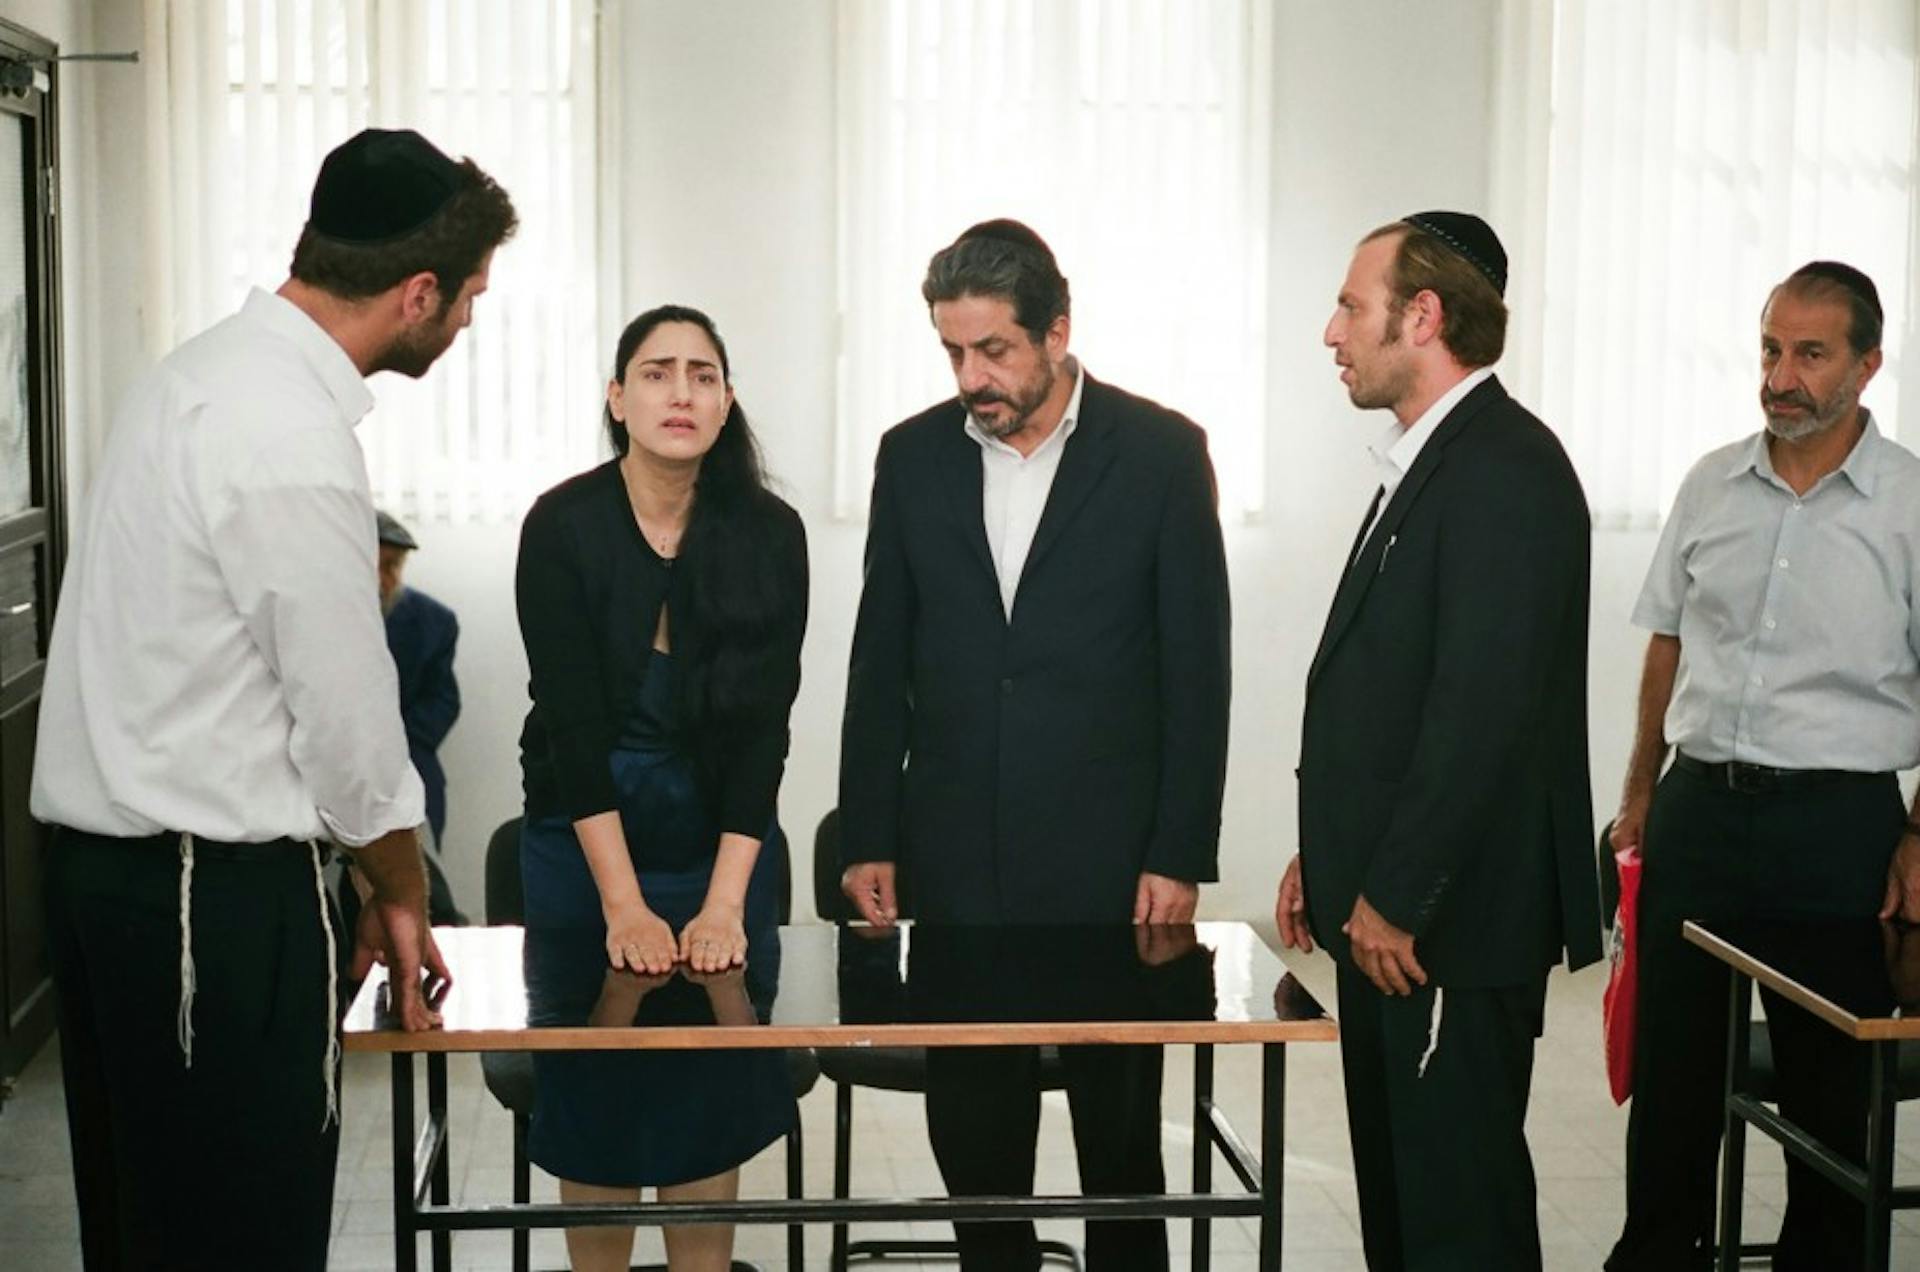 Gett, the Trial of Vivian Amsalem (Gett)